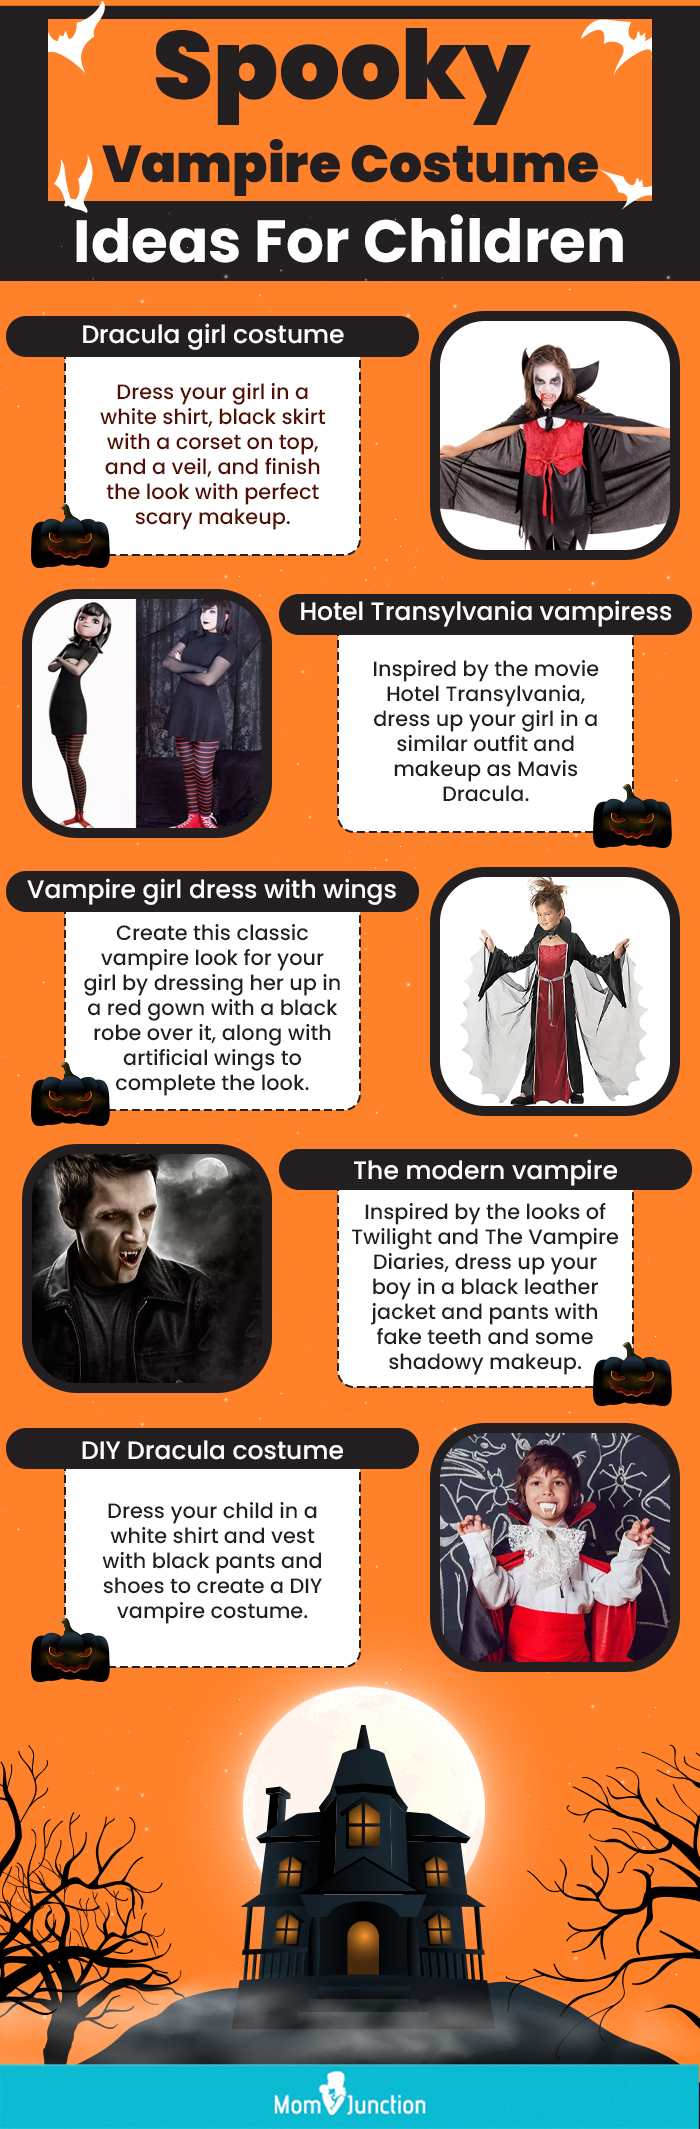 https://cdn2.momjunction.com/wp-content/uploads/2021/08/Spooky-Vampire-Costume-Ideas-For-Children.jpg